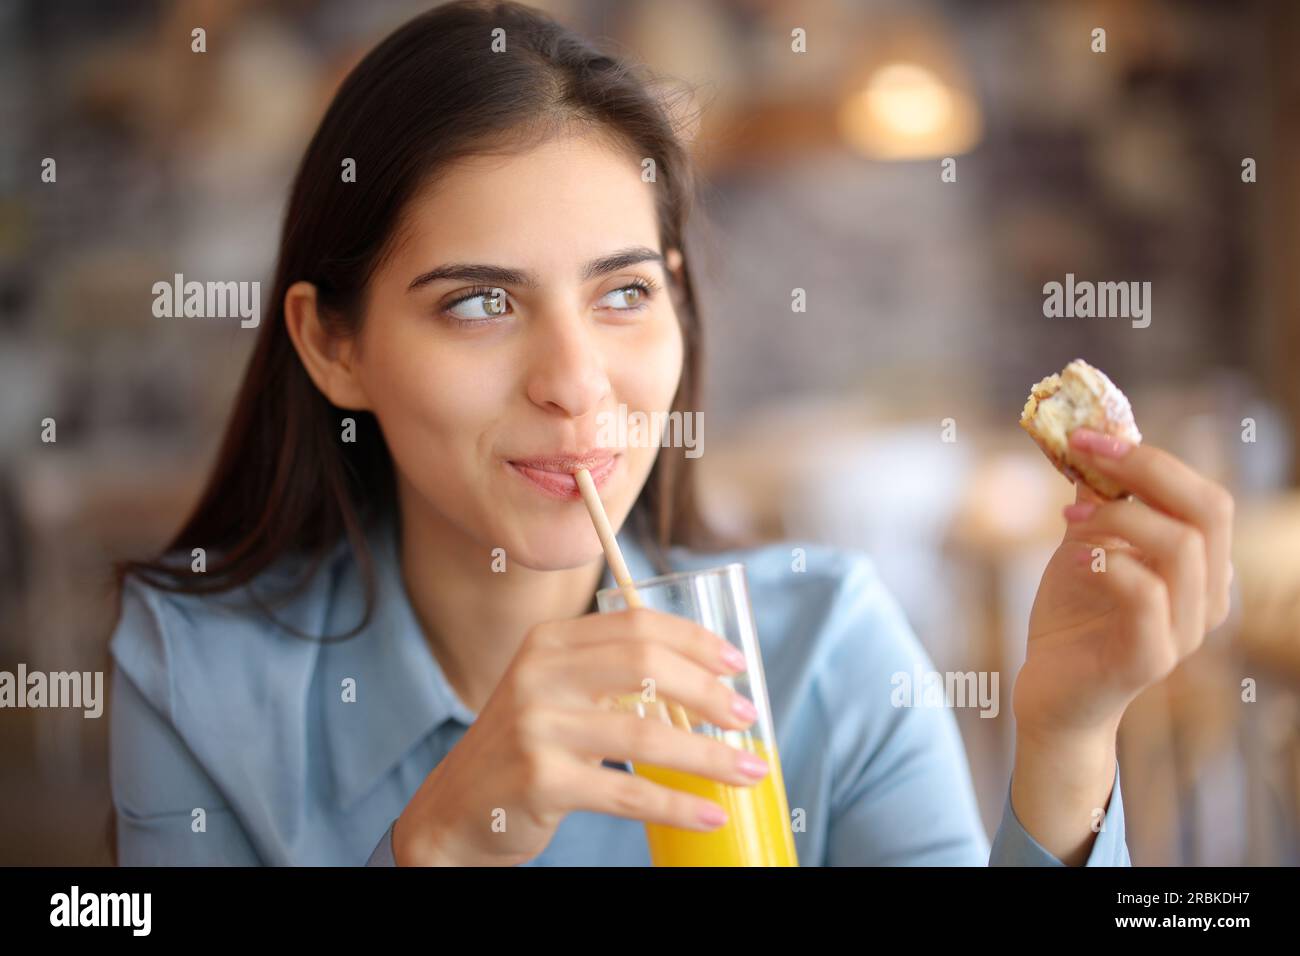 Femme heureuse buvant du jus mangeant un croissant dans un restaurant Banque D'Images